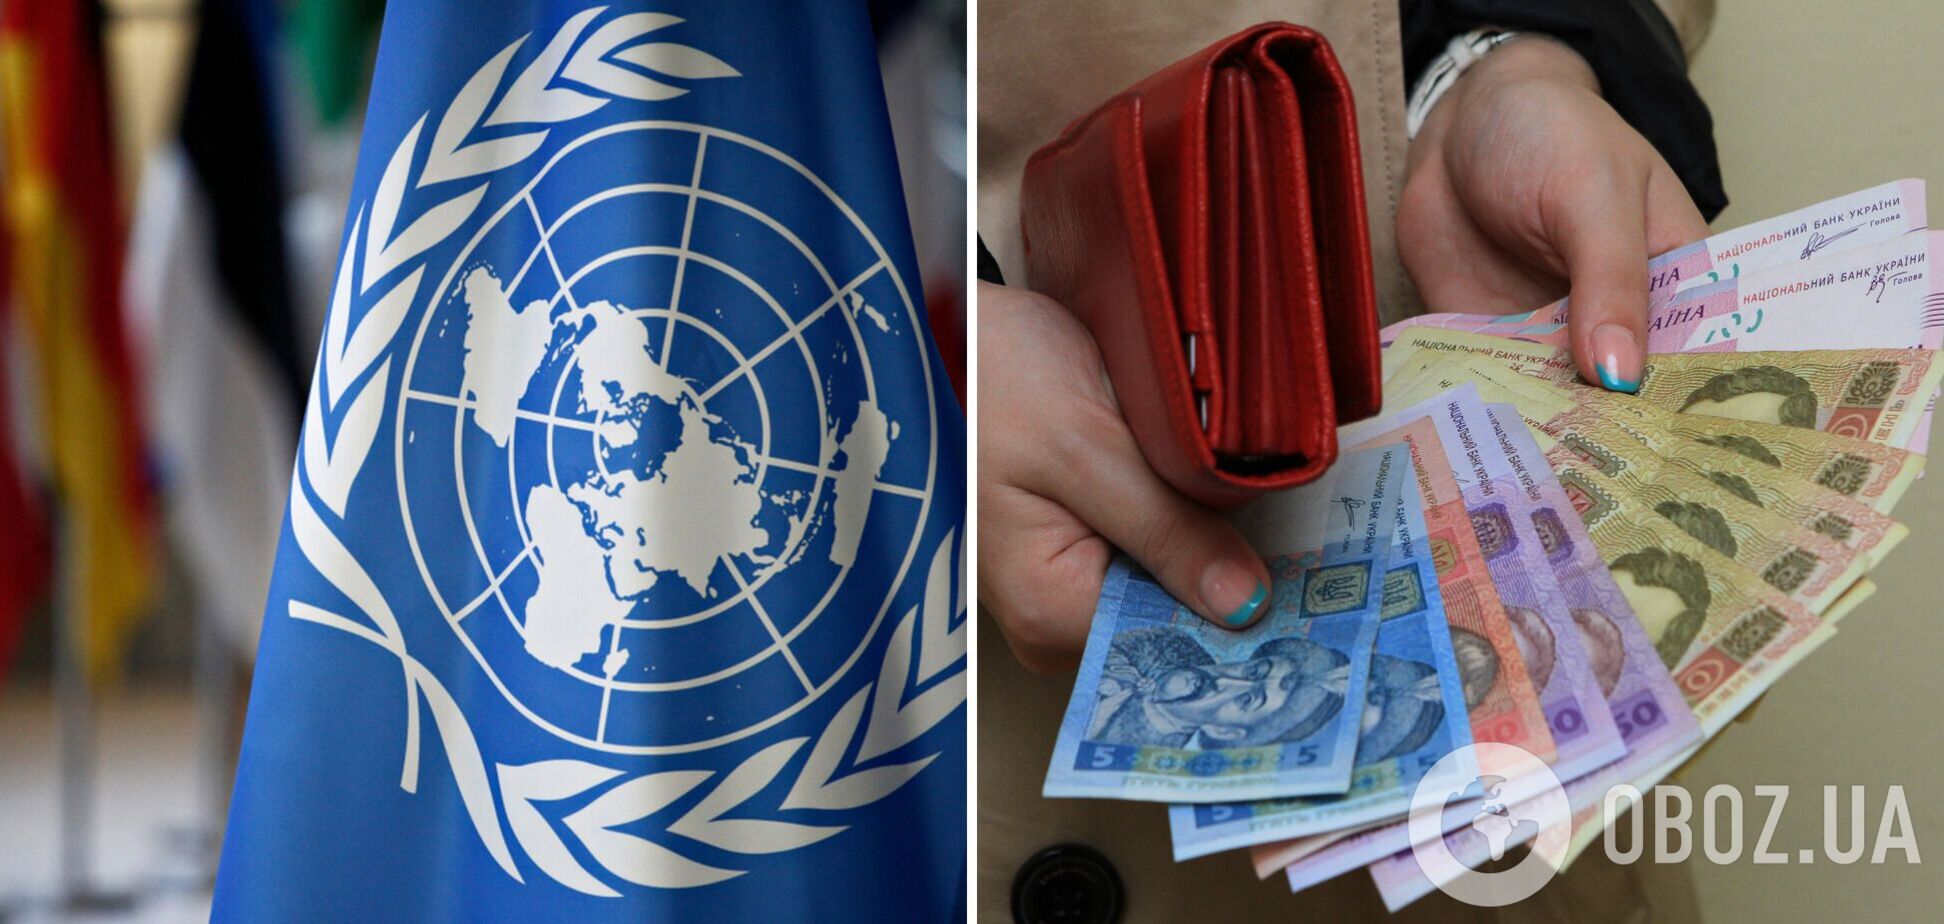 ООН поможет переселенцам деньгами